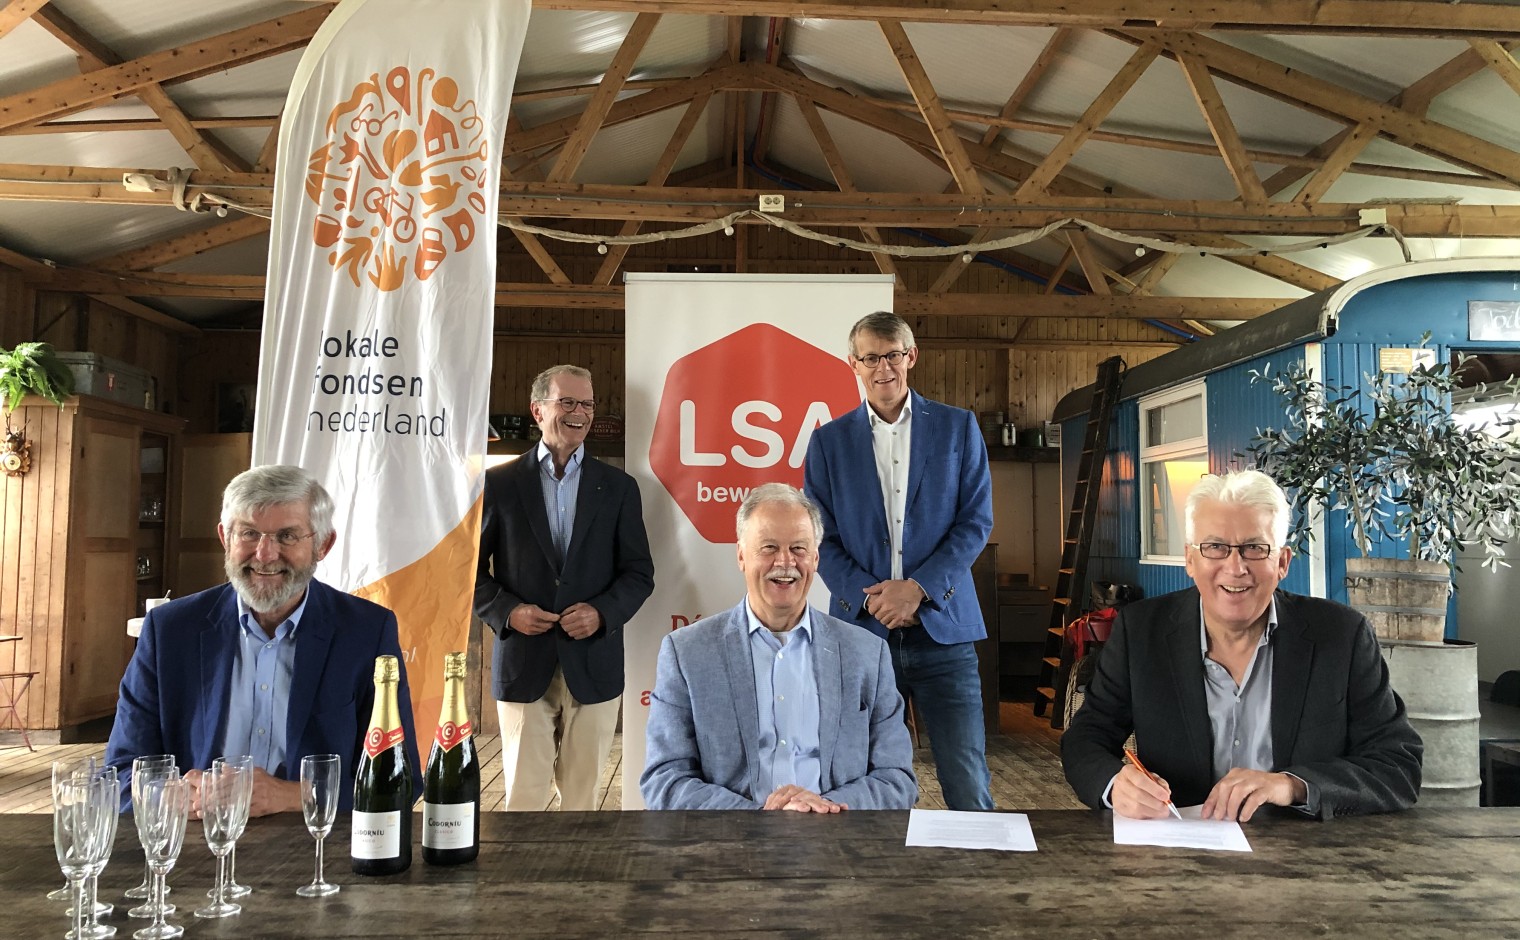 V.l.n.r.: Harrie Bosch (voorzitter LSA), Peter van der Torre, Pierre van Hedel (voorzitter LFN), Stan Uyland en Hans Zuiver (penningmeester/secretaris LSA).